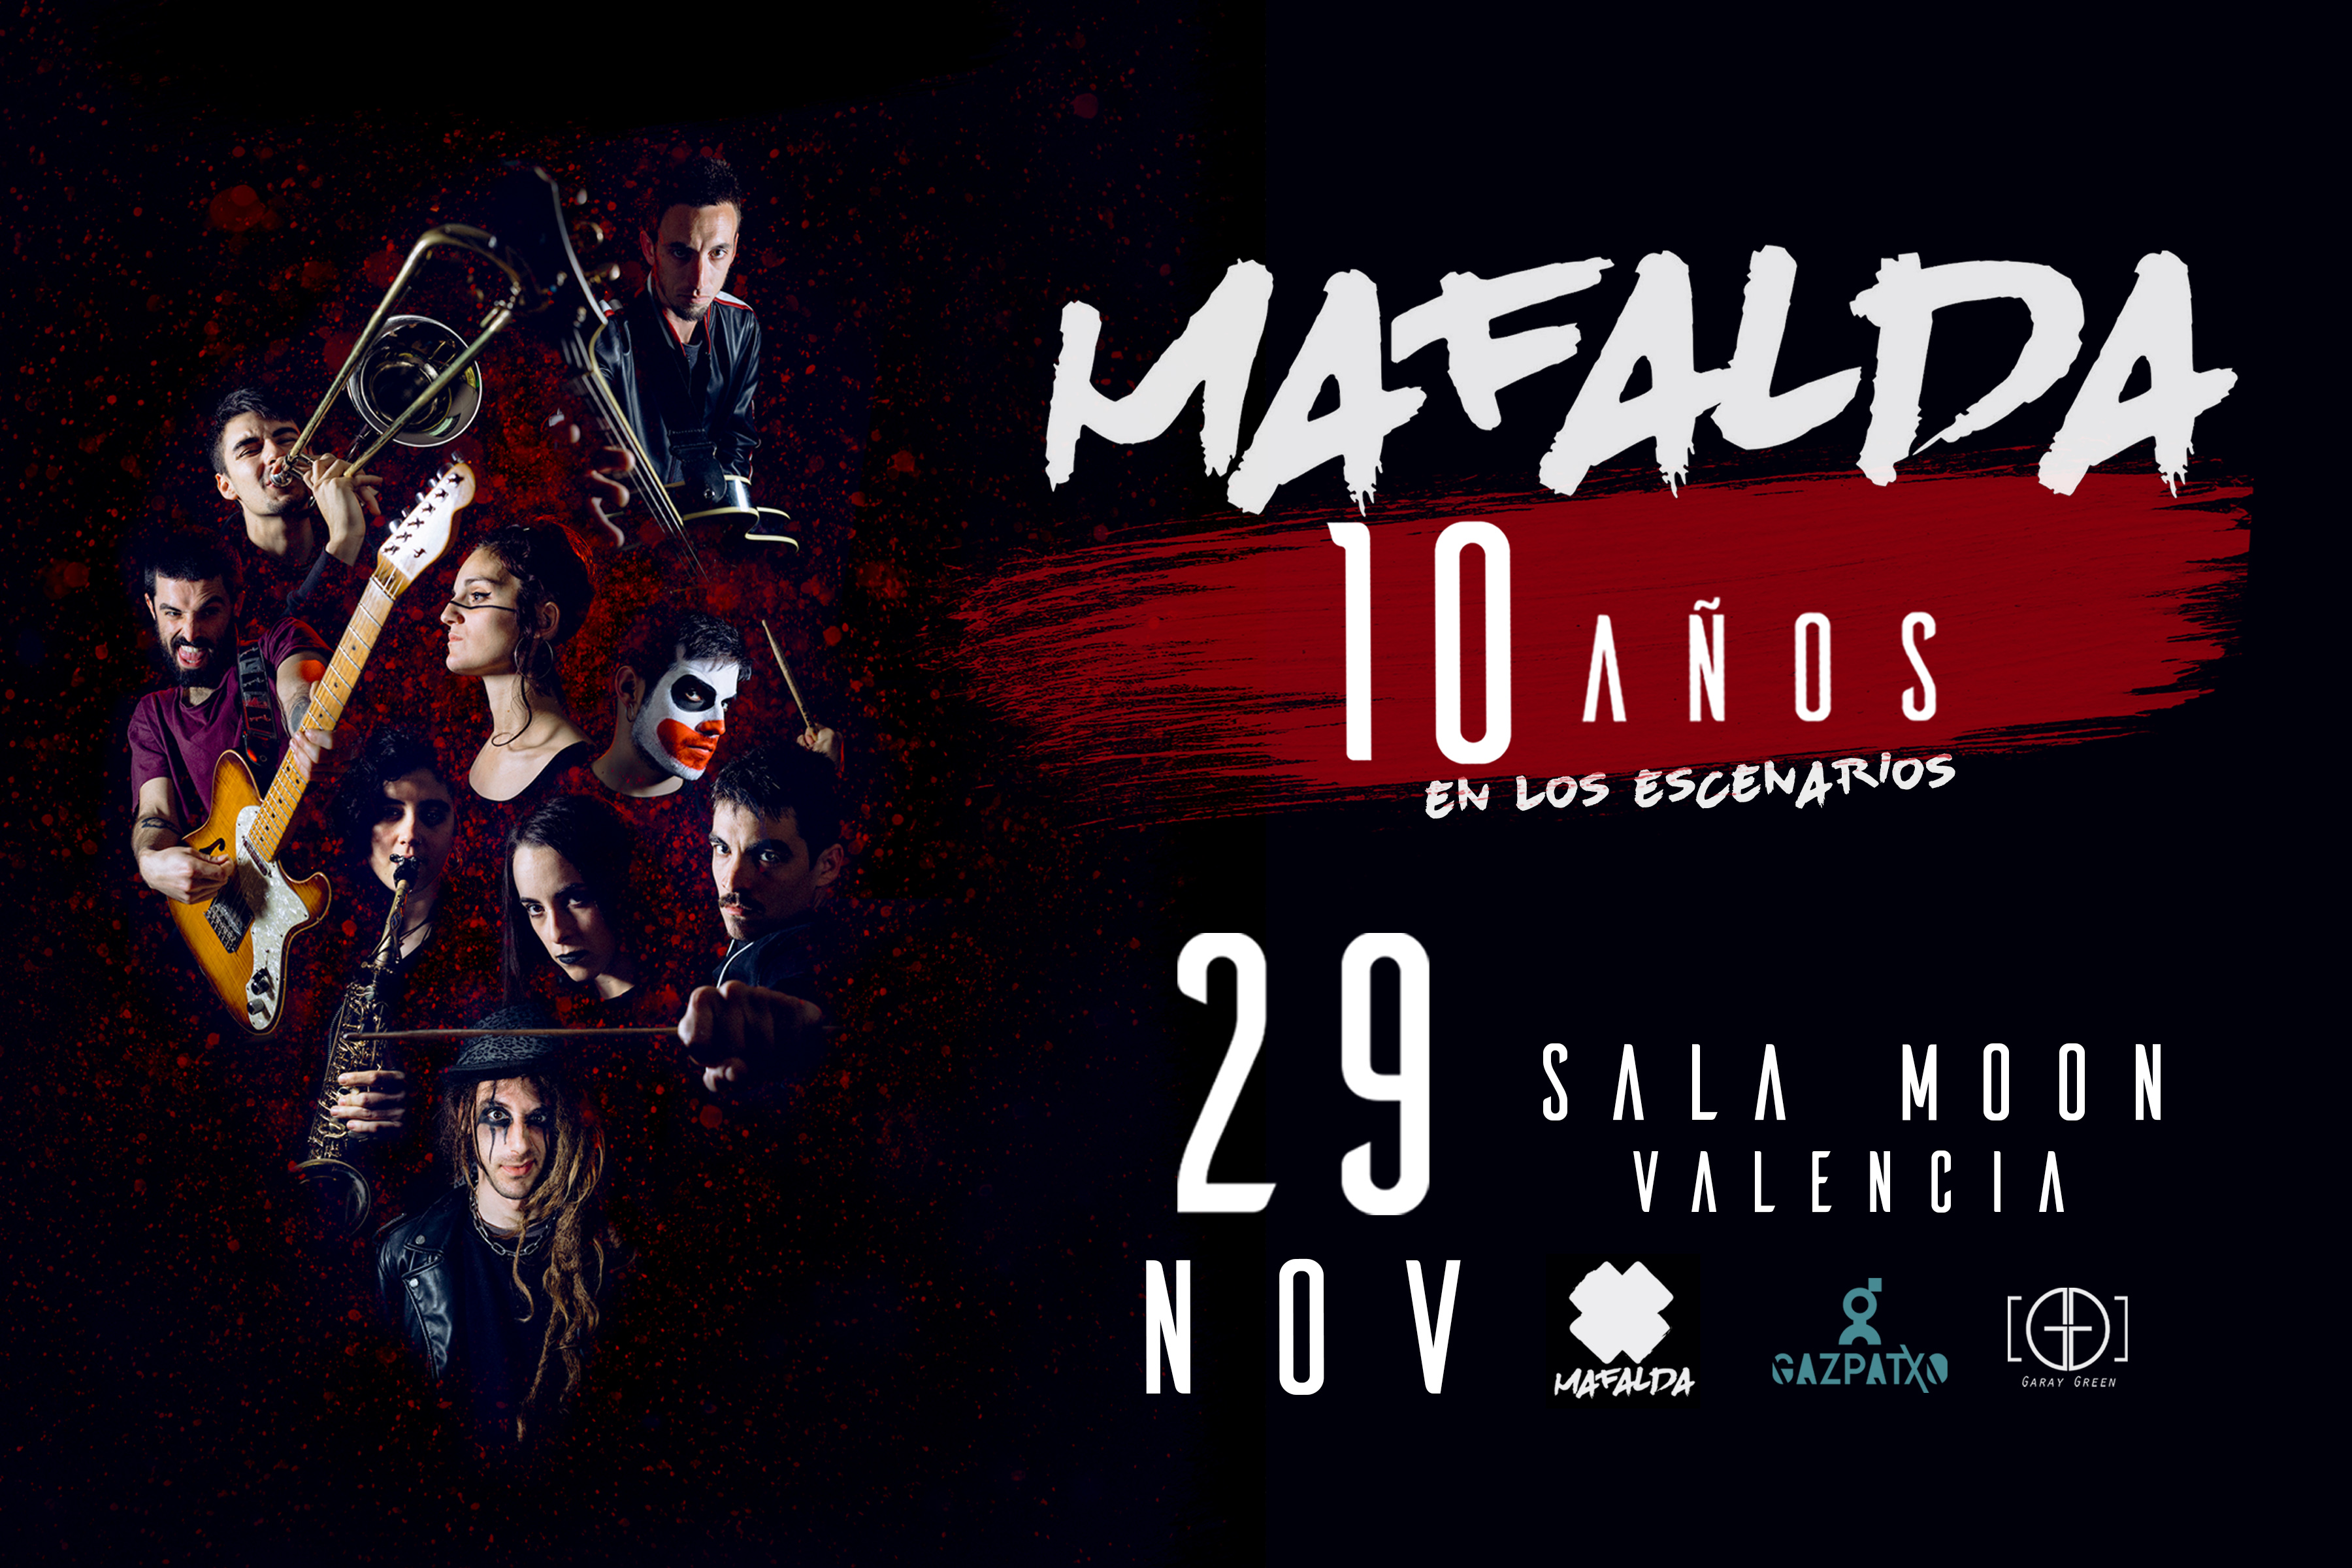 Mafalda Concert Tickets For Sala Moon Valencia Friday 29